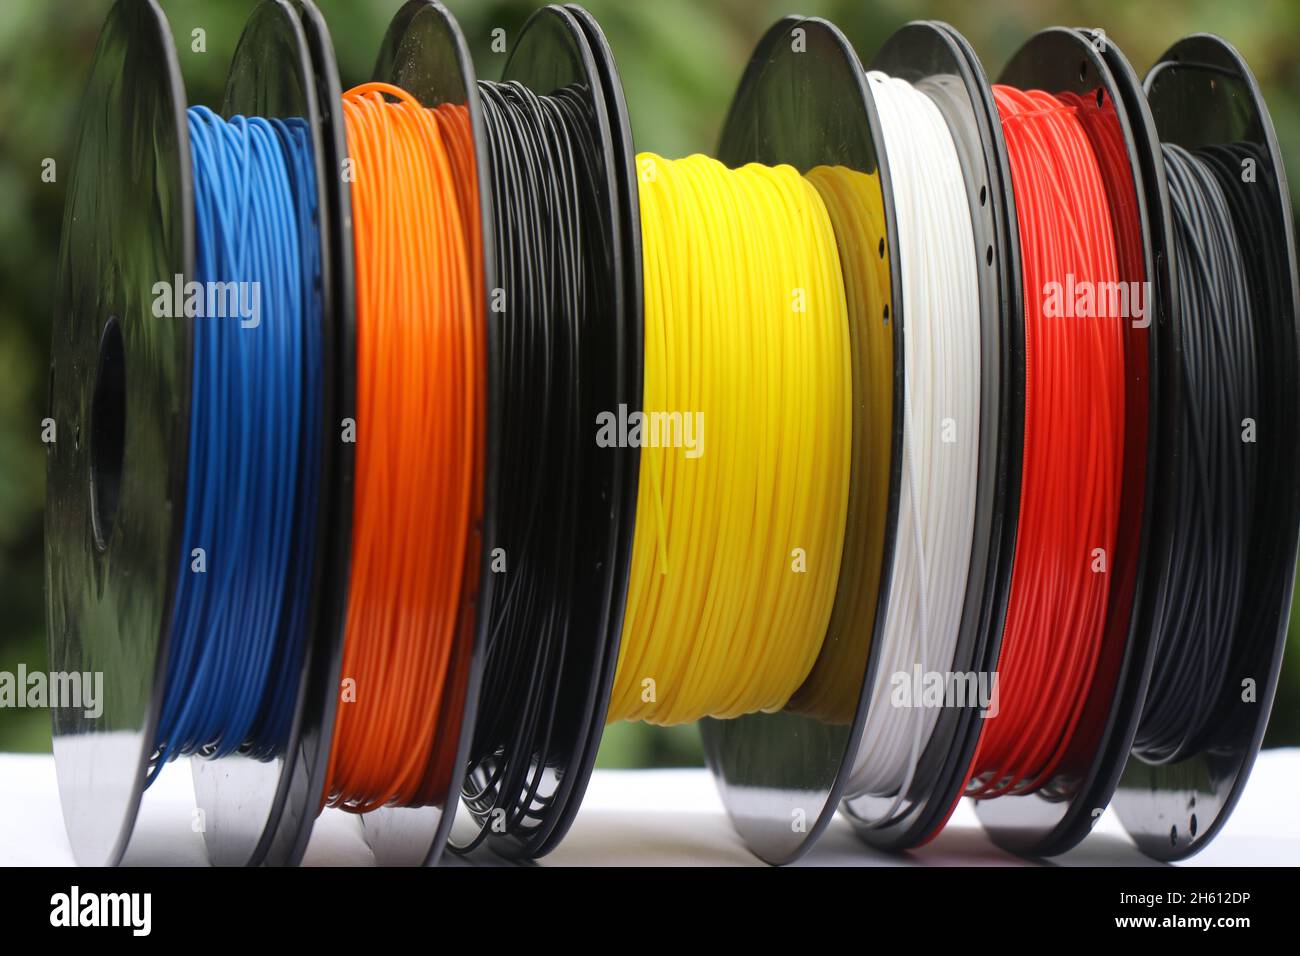 ABS Filament Reels